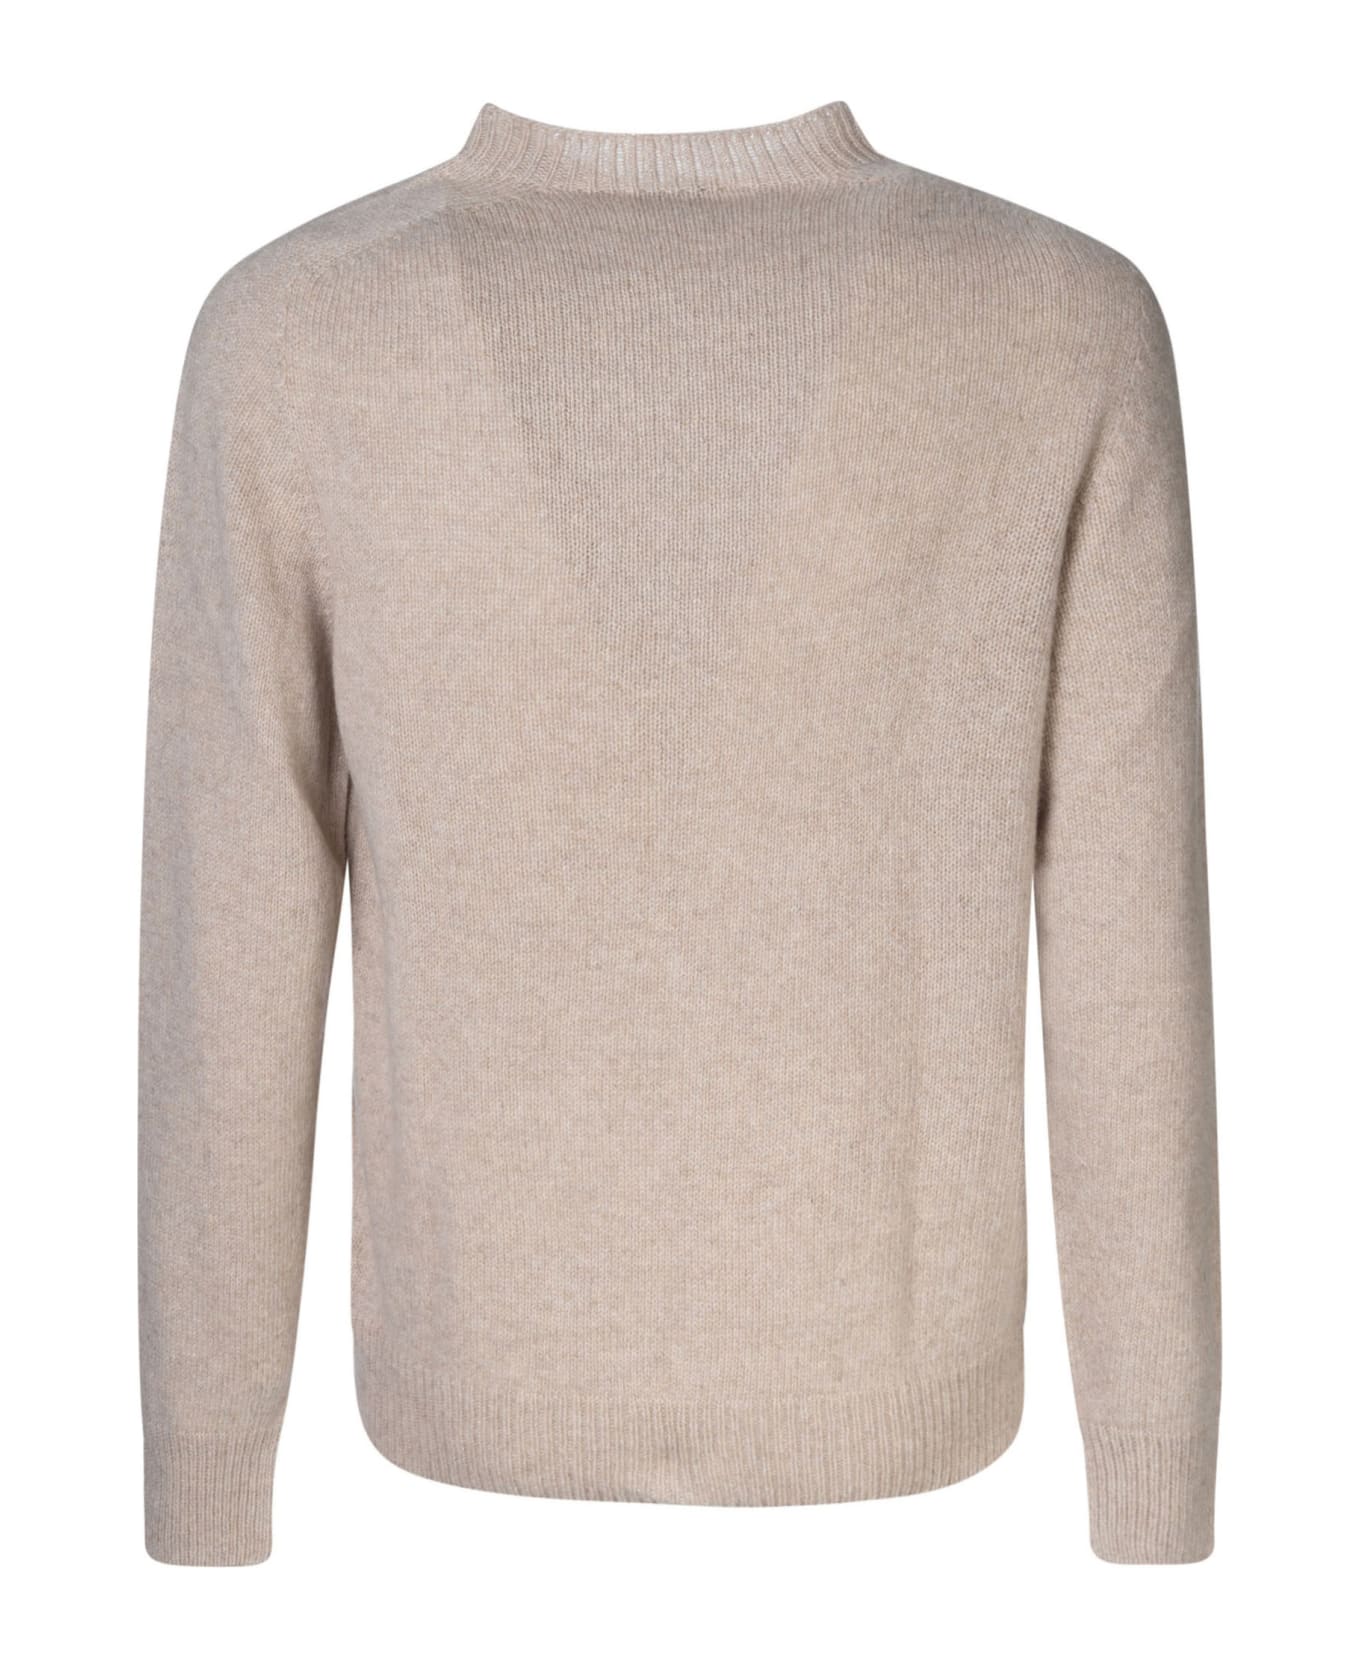 Lanvin Round Neck Sweater - Beige